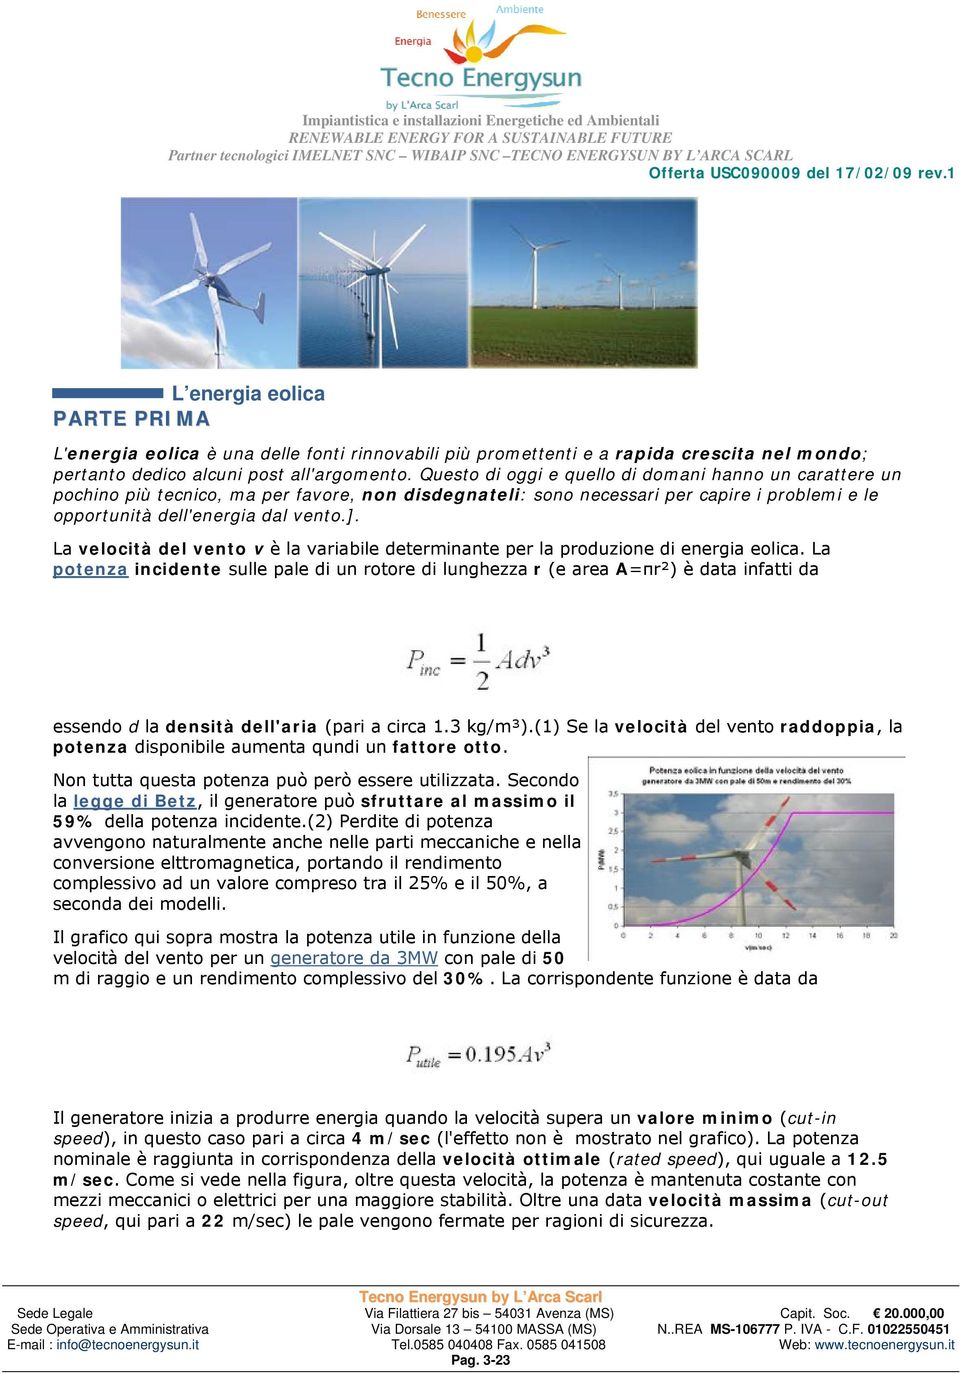 La velocità del vento v è la variabile determinante per la produzione di energia eolica.